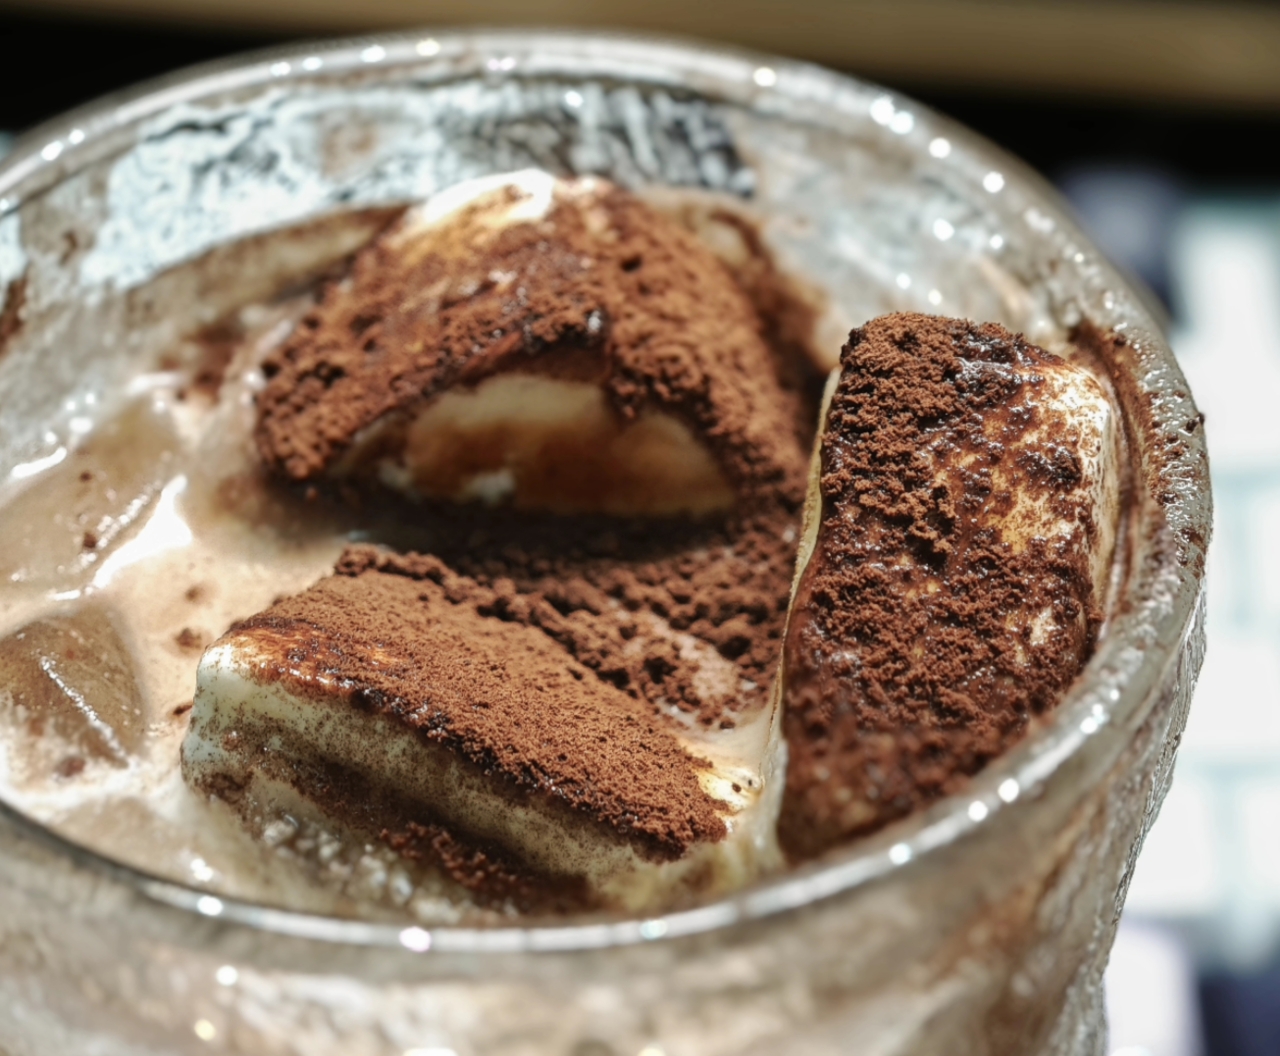 冰砖美式☕咖啡与冰淇淋的完美组合